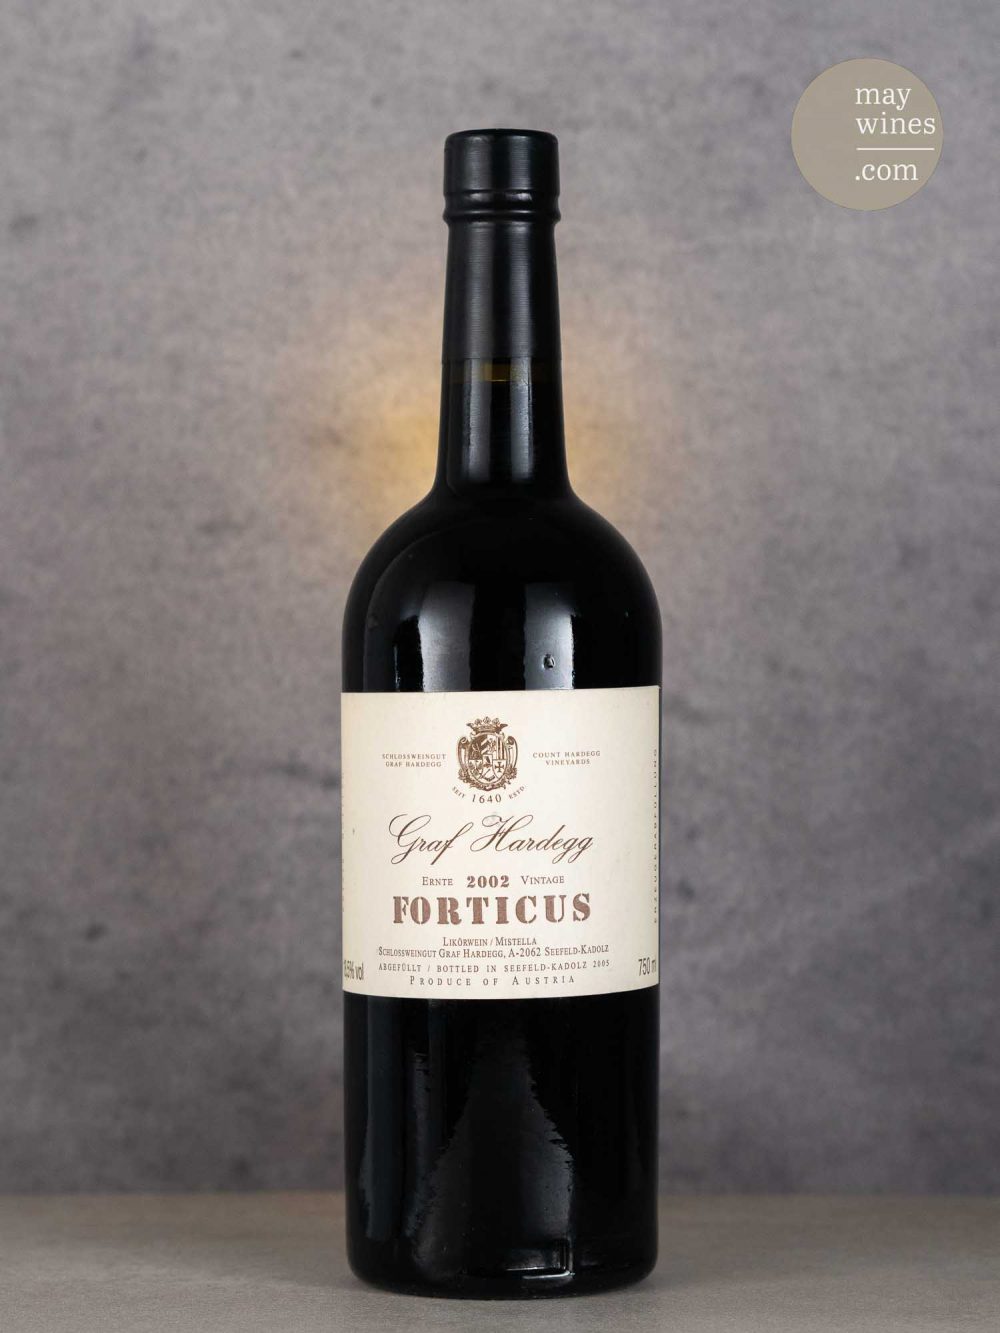 May Wines – Süßwein – 2002 Forticus - Schlossweingut Graf Hardegg